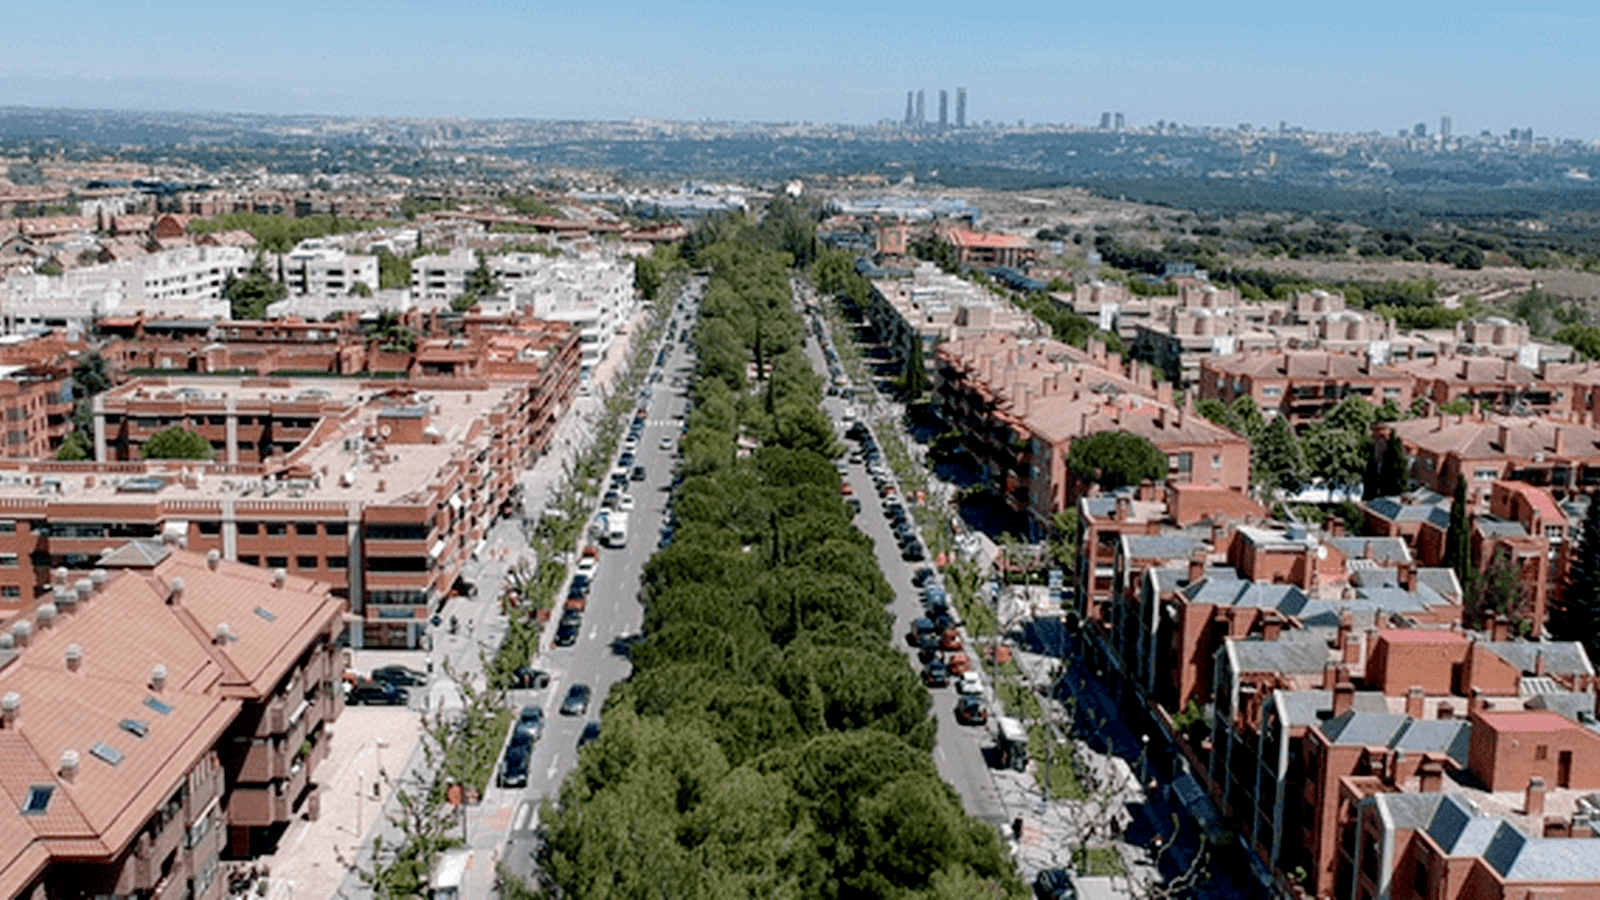 Cs Pozuelo propone habilitar temporalmente el bulevar de la Avenida de Europa para instalar terrazas 